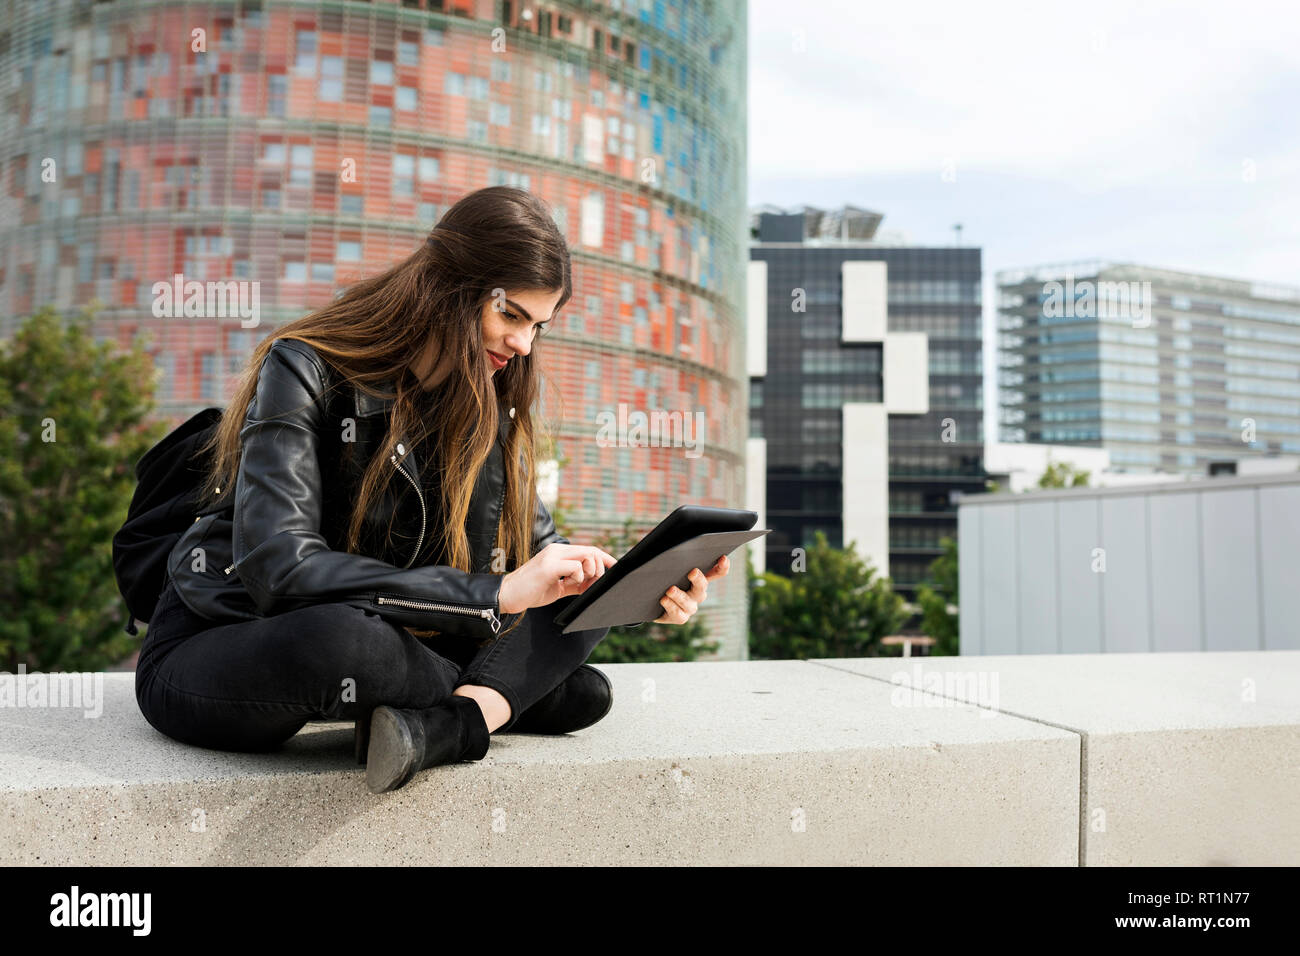 Espagne Barcelone, jeune femme assise dans la ville à l'aide de tablet Banque D'Images